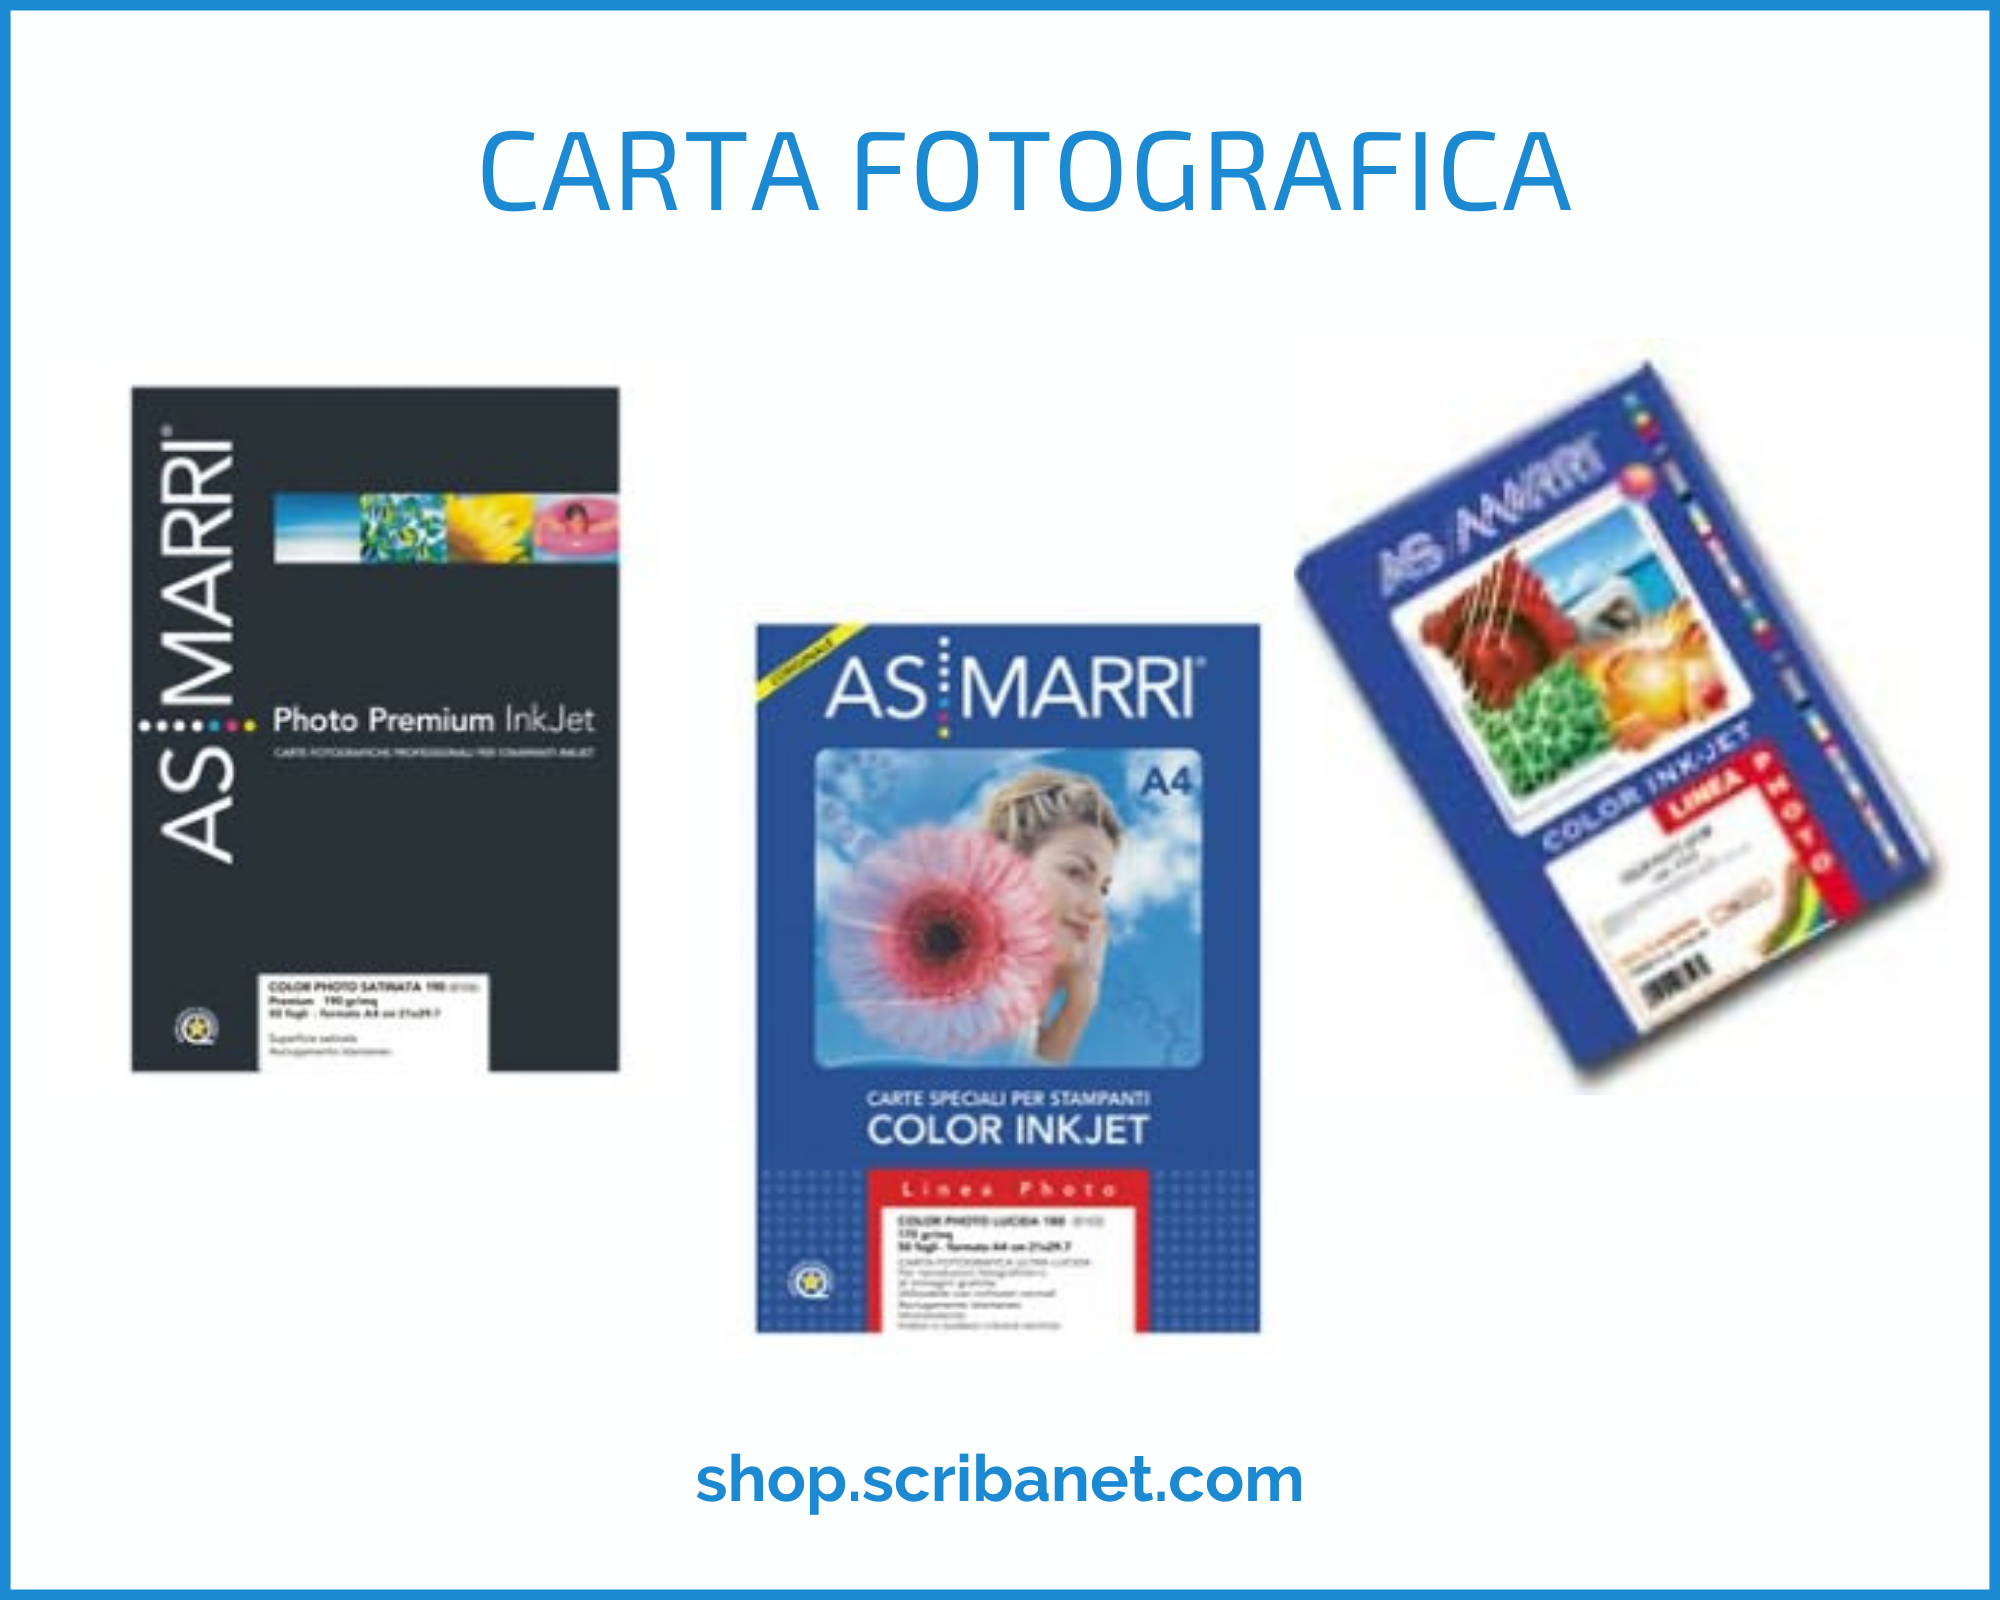 Risultati di ricerca per: 'CARTA+FOTOGRAFICA+a3